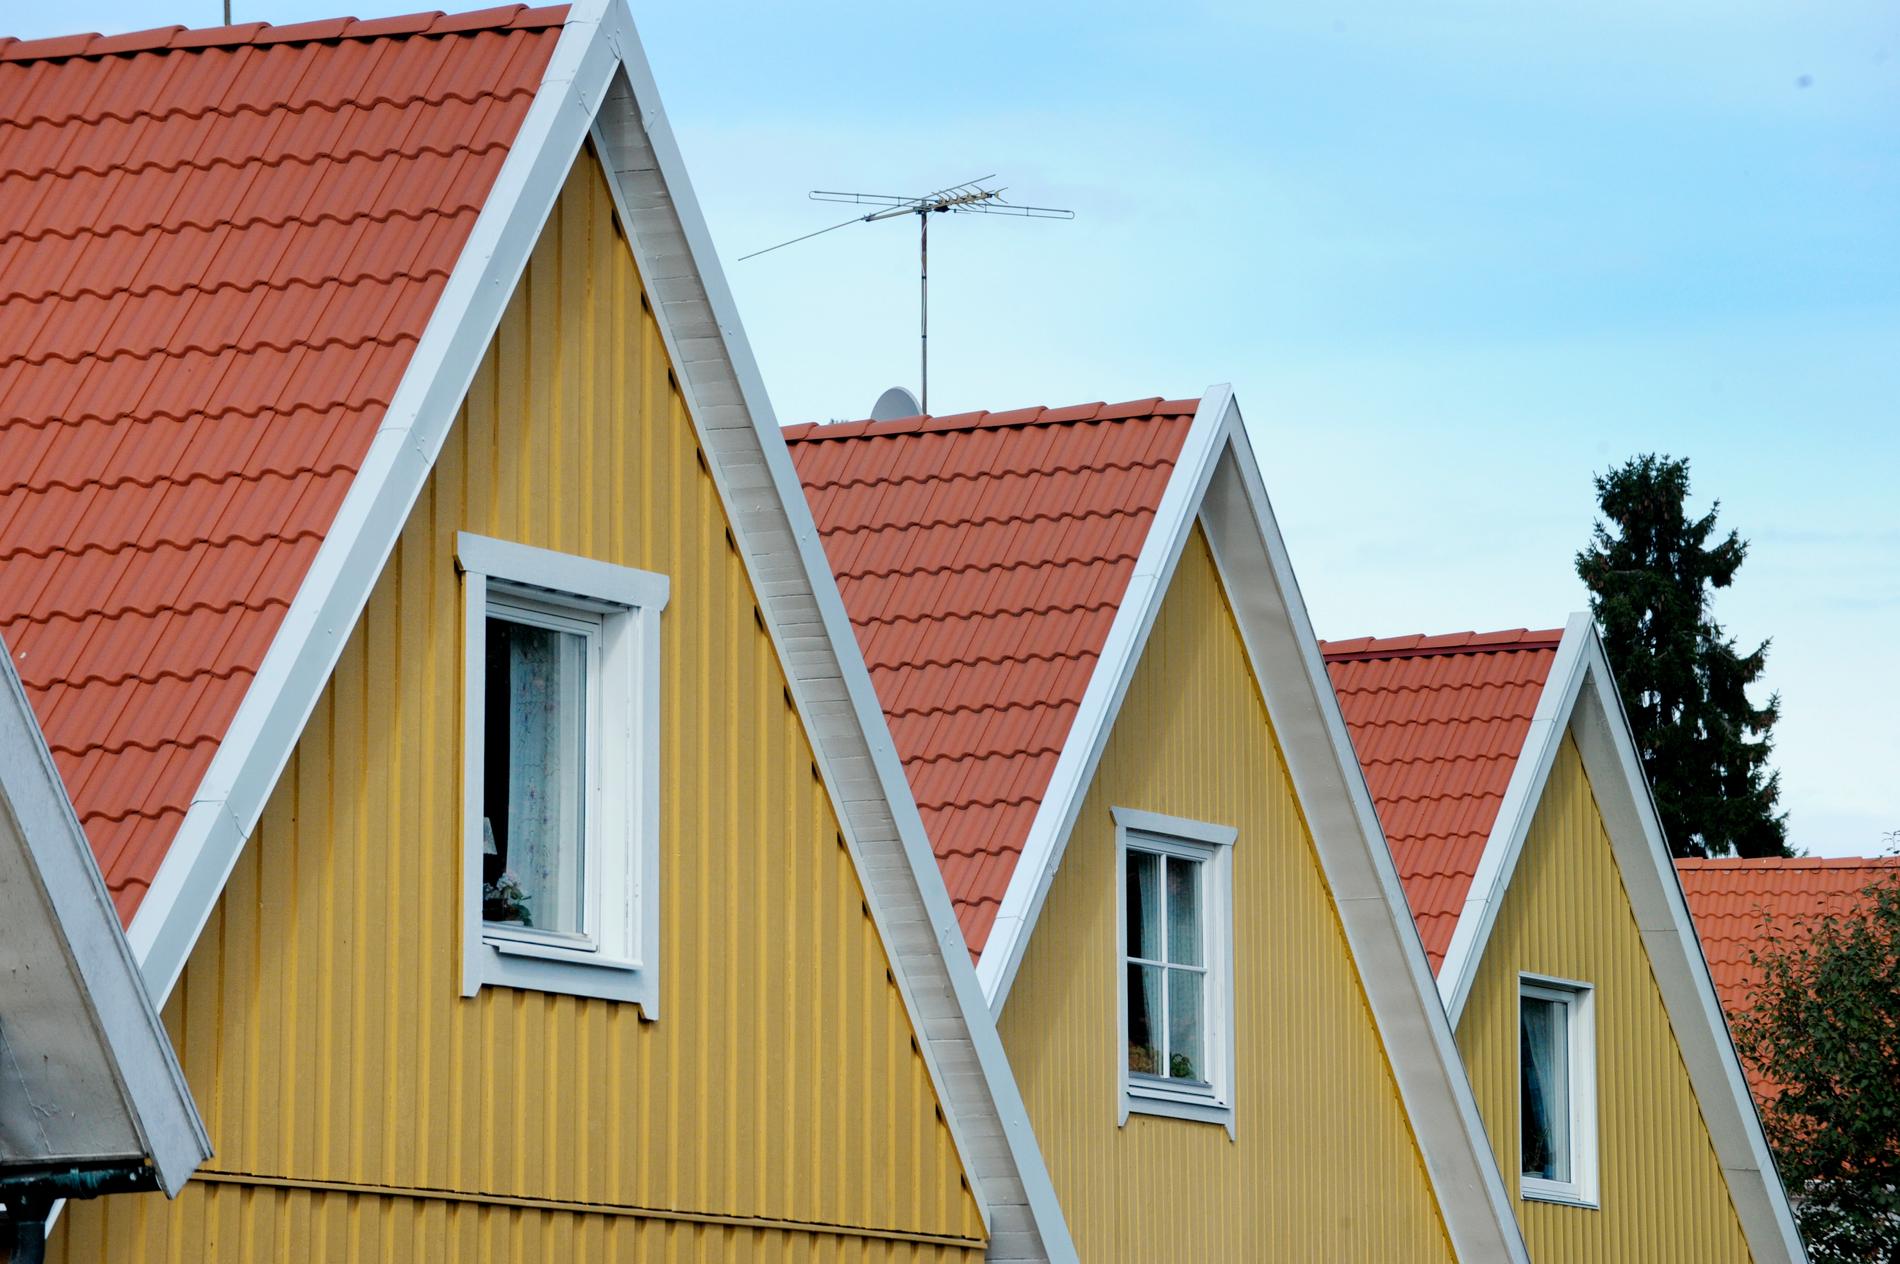 52 procent av svenska folket bor i småhus, enligt SCB.